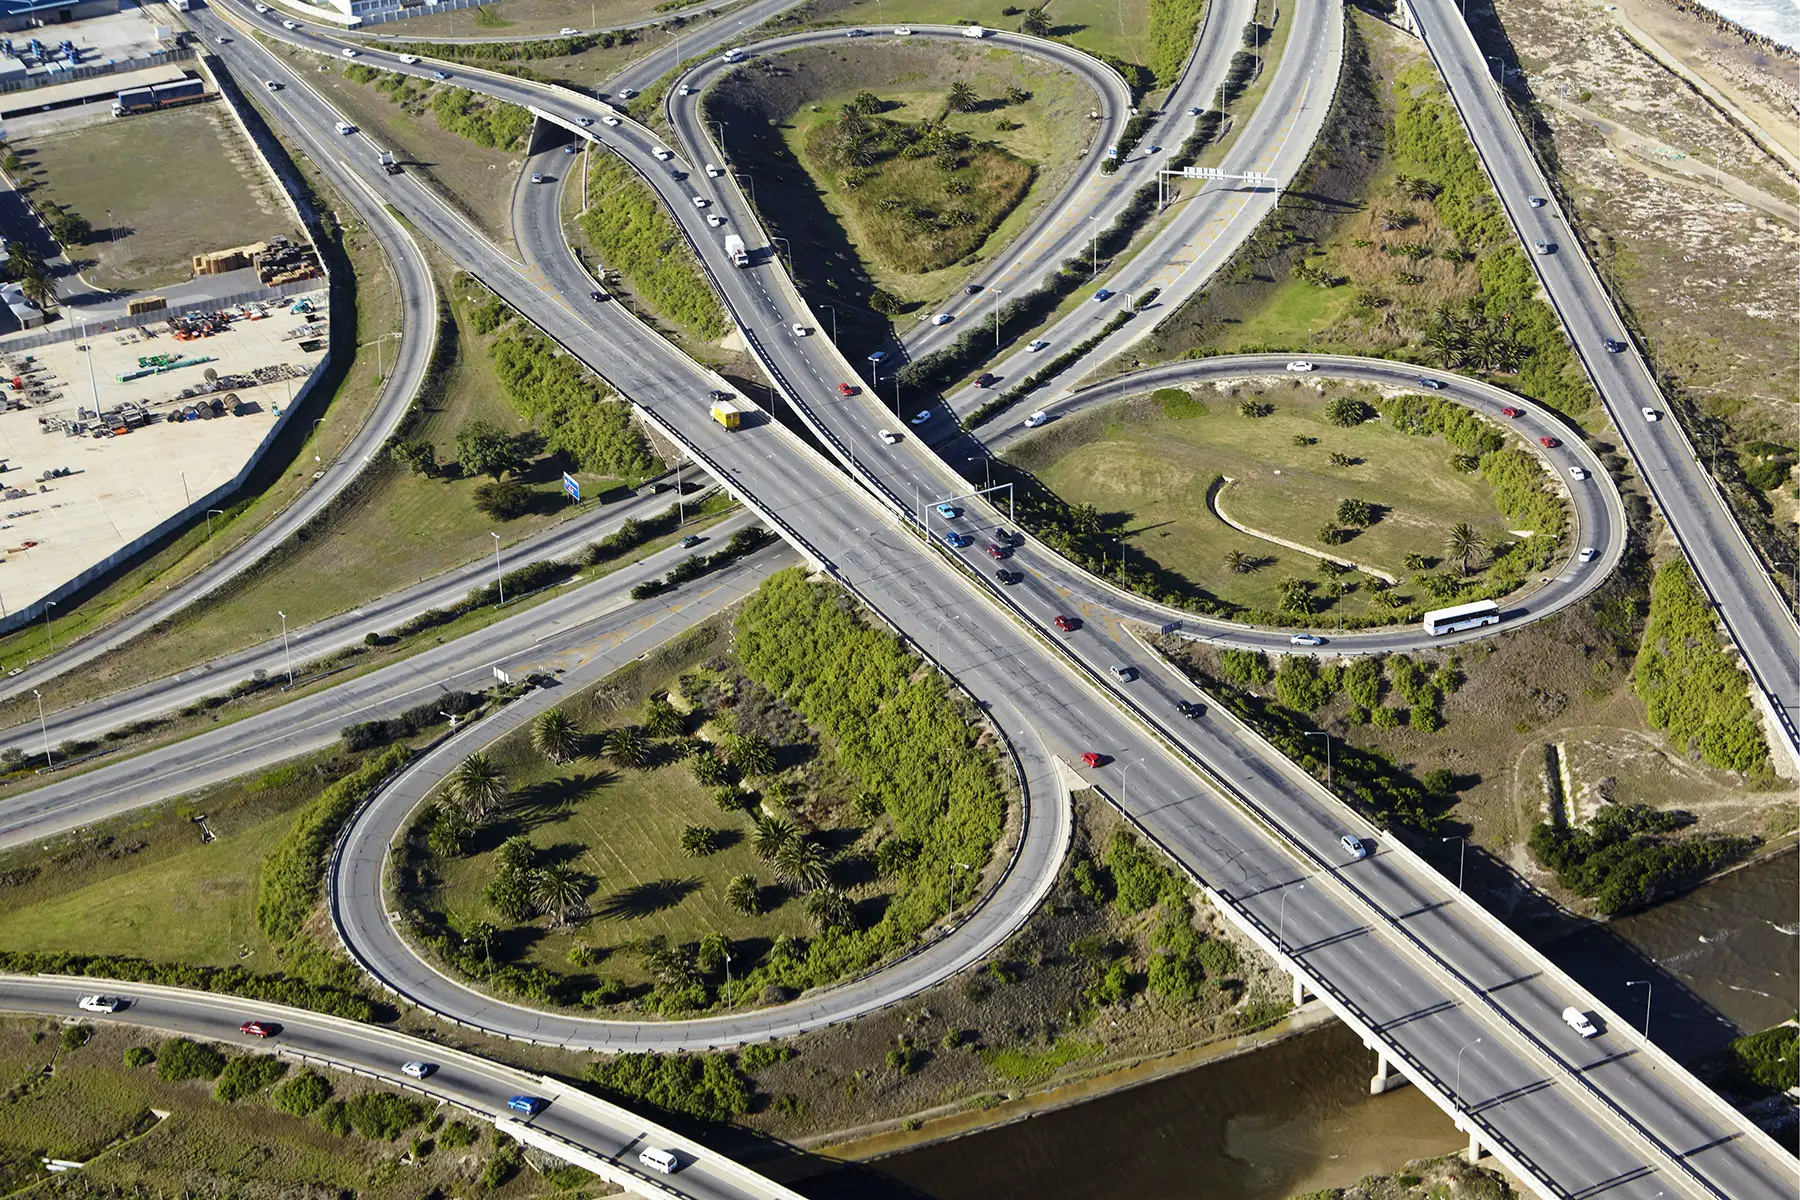 M4 motorway interchange near Johannesburg